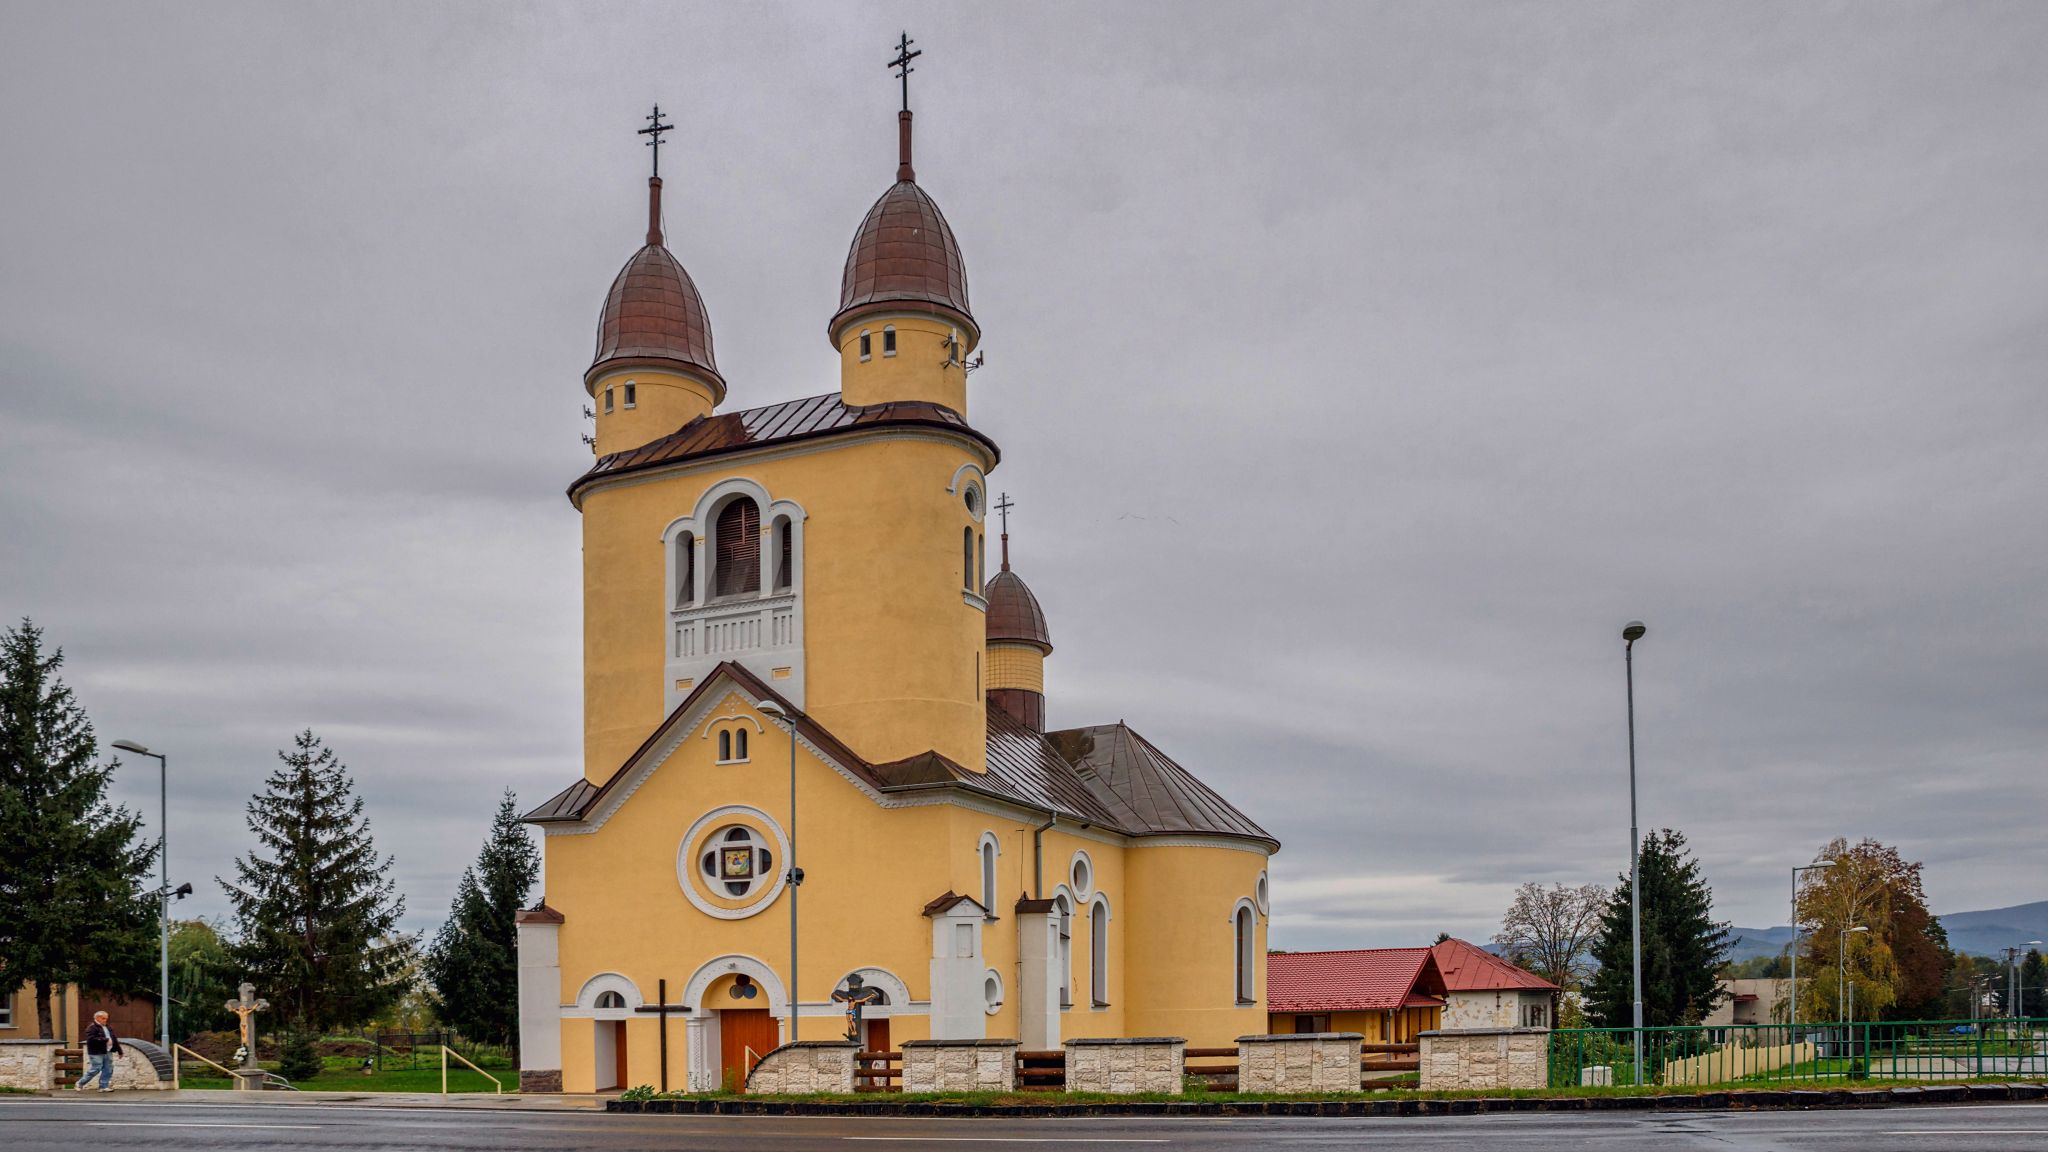 Kostol sv. Petra a Pavla, Zalužice Zdroj: Depositphoto